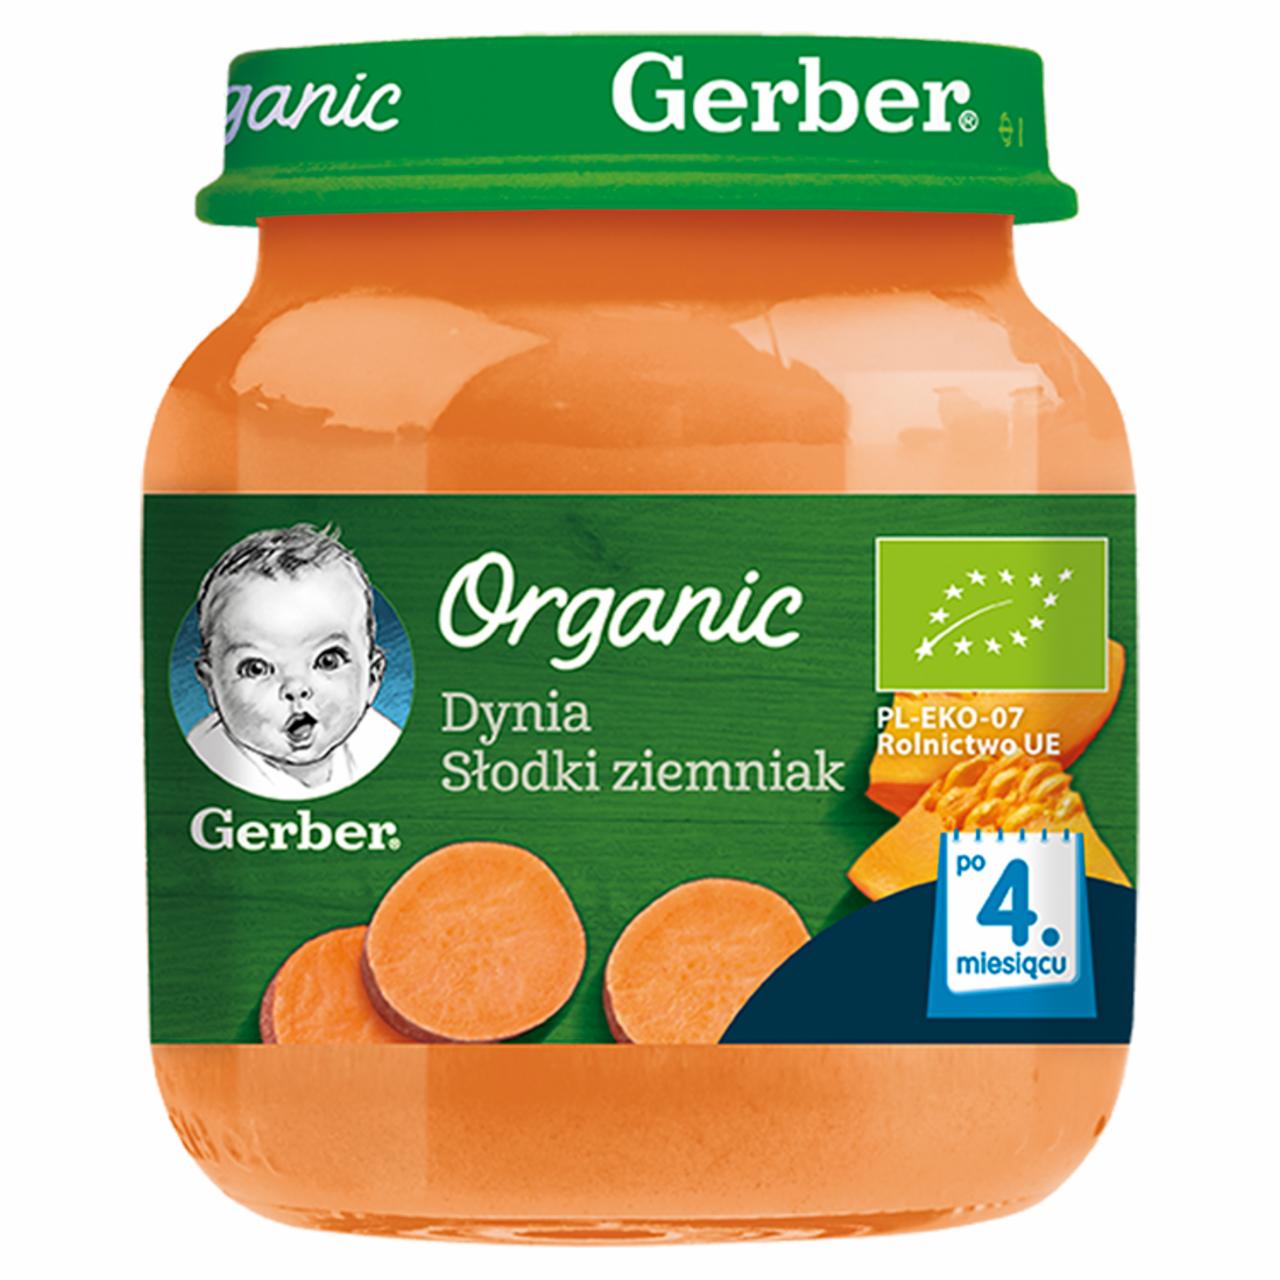 Zdjęcia - Gerber Organic Dynia słodki ziemniak dla niemowląt po 4. miesiącu 125 g